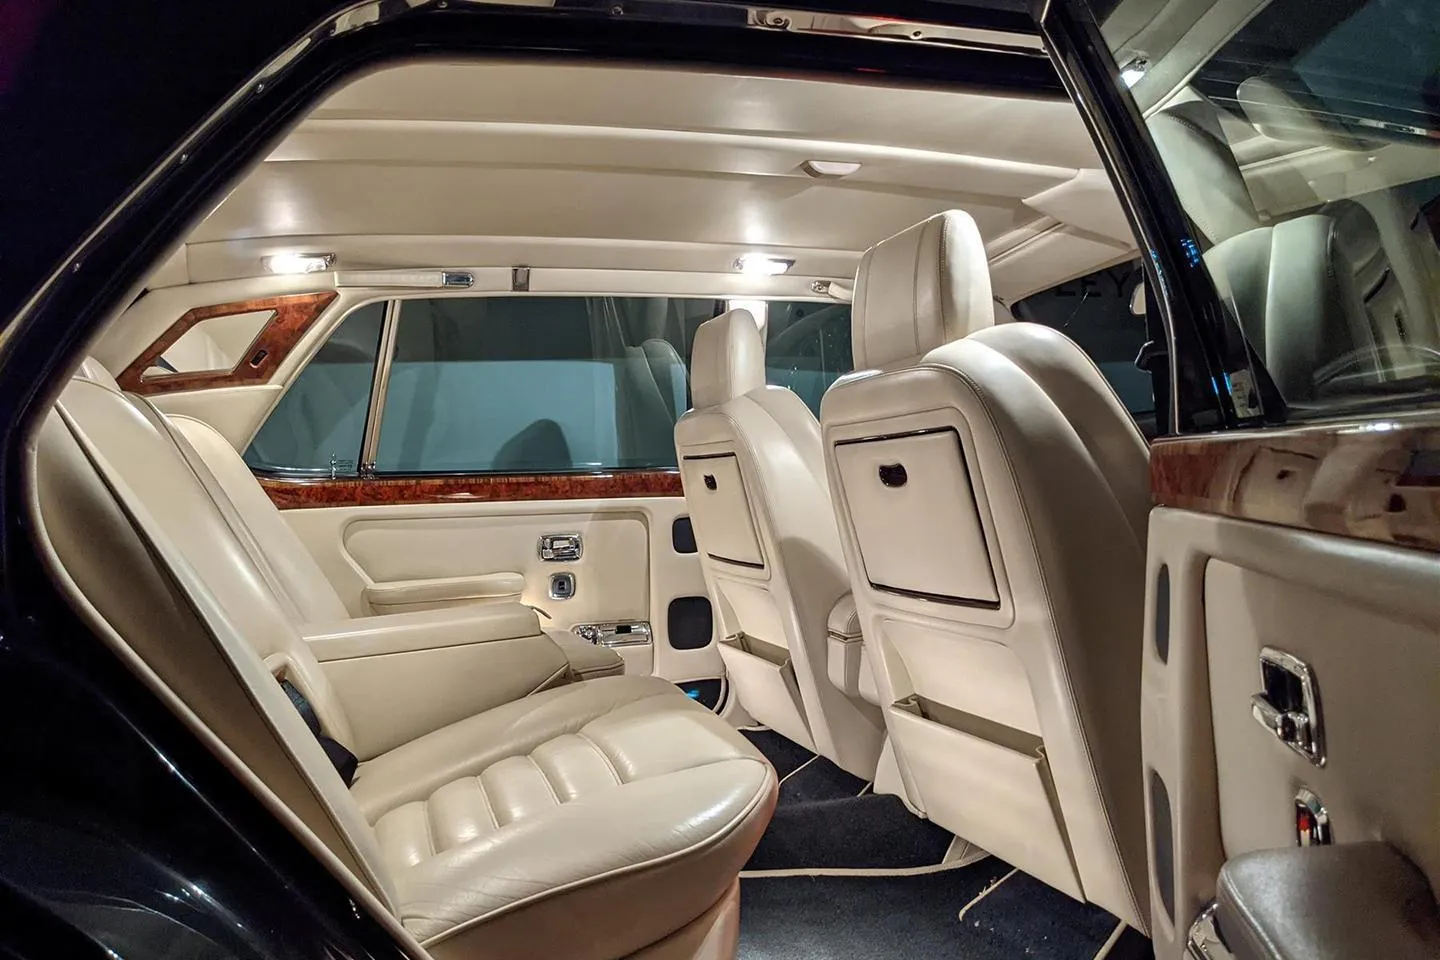 Bentley Turbo R interior - Seats